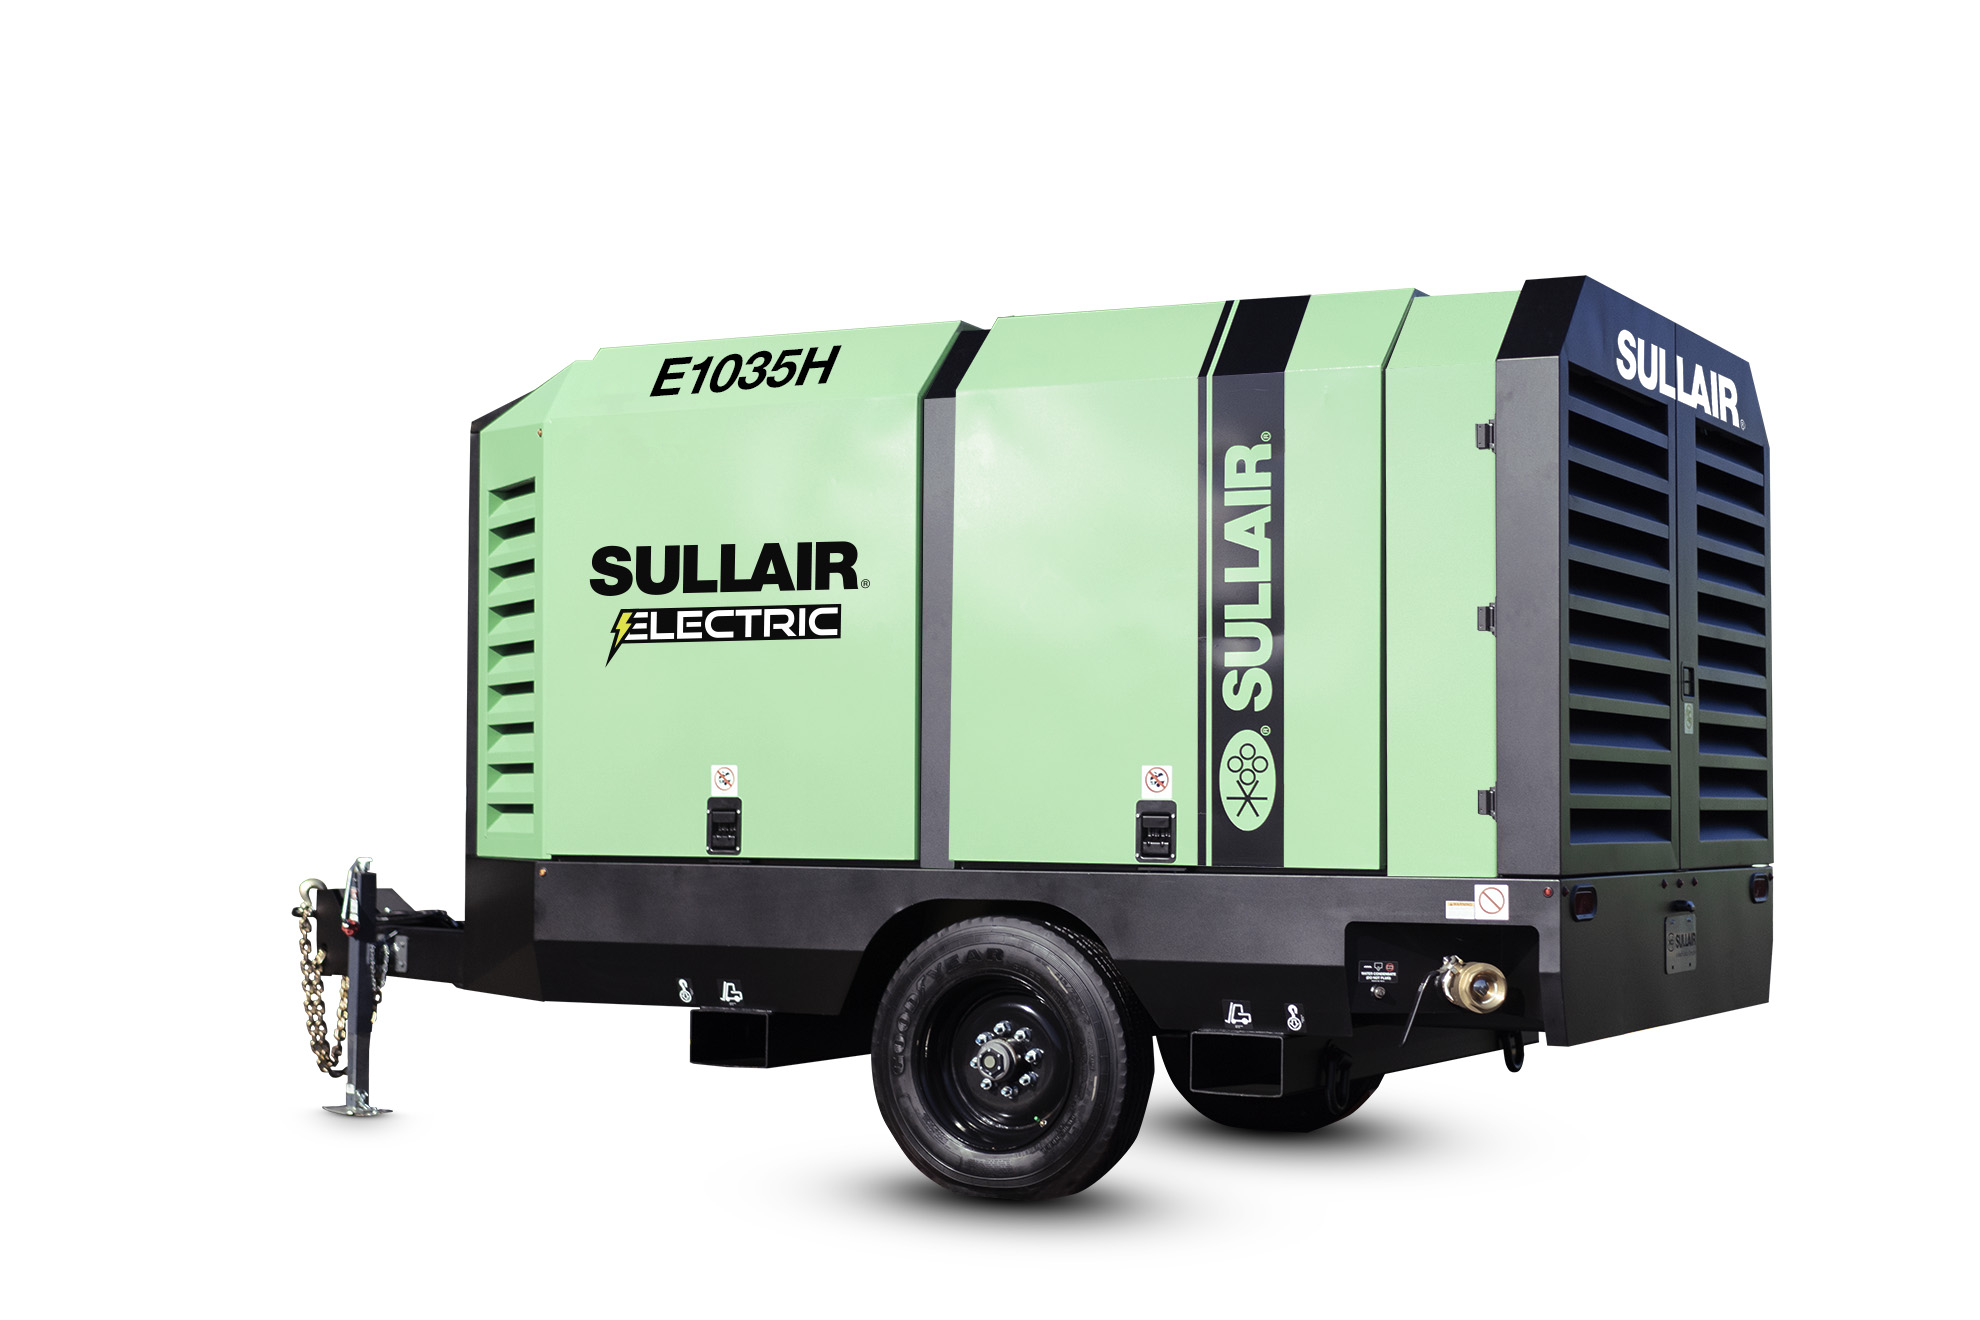 Sullair lanza un compresor eléctrico portátil ecológico para los mercados de la construcción y de alquiler.